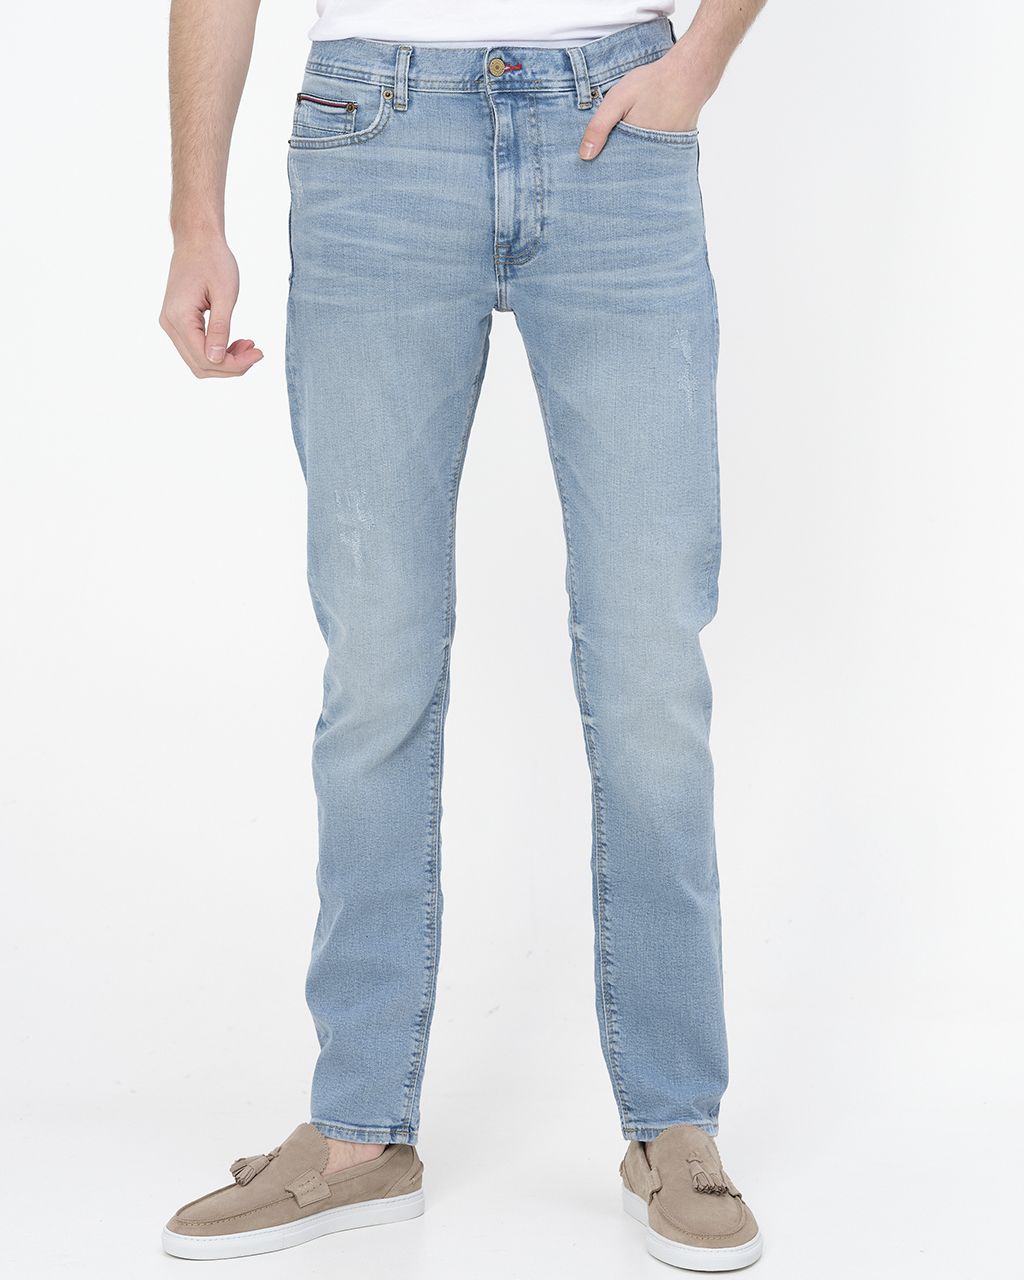 Tommy Hilfiger Menswear Jeans Blauw 075001-001-30/32